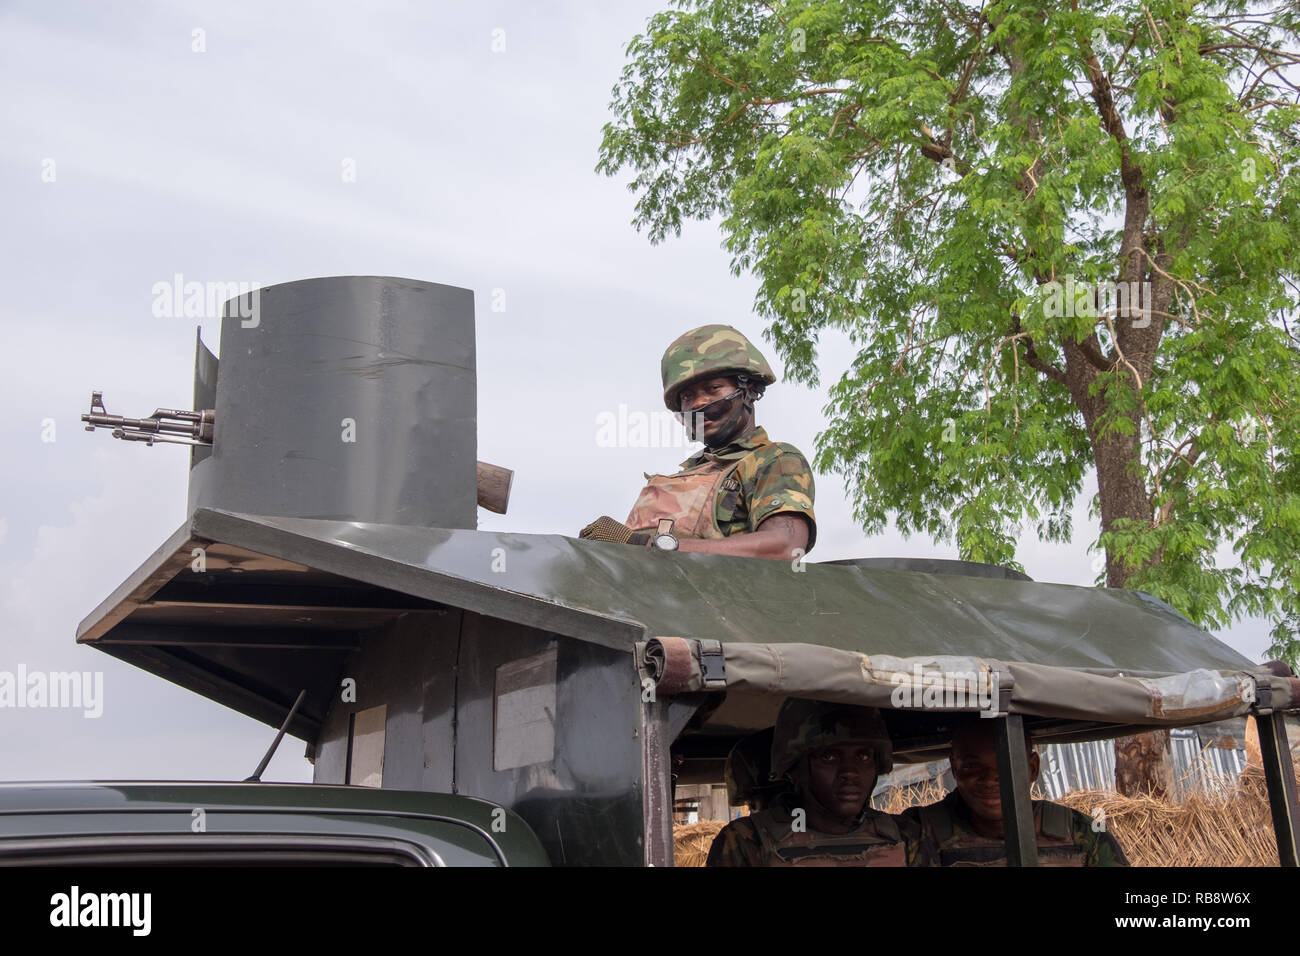 Un soldat de l'armée nigériane regarde vers le bas à partir d'un camion d'armes à feu près de la capitale, Abuja. Le Nigeria a été la lutte contre les djihadistes de Boko Haram depuis 2011. Banque D'Images